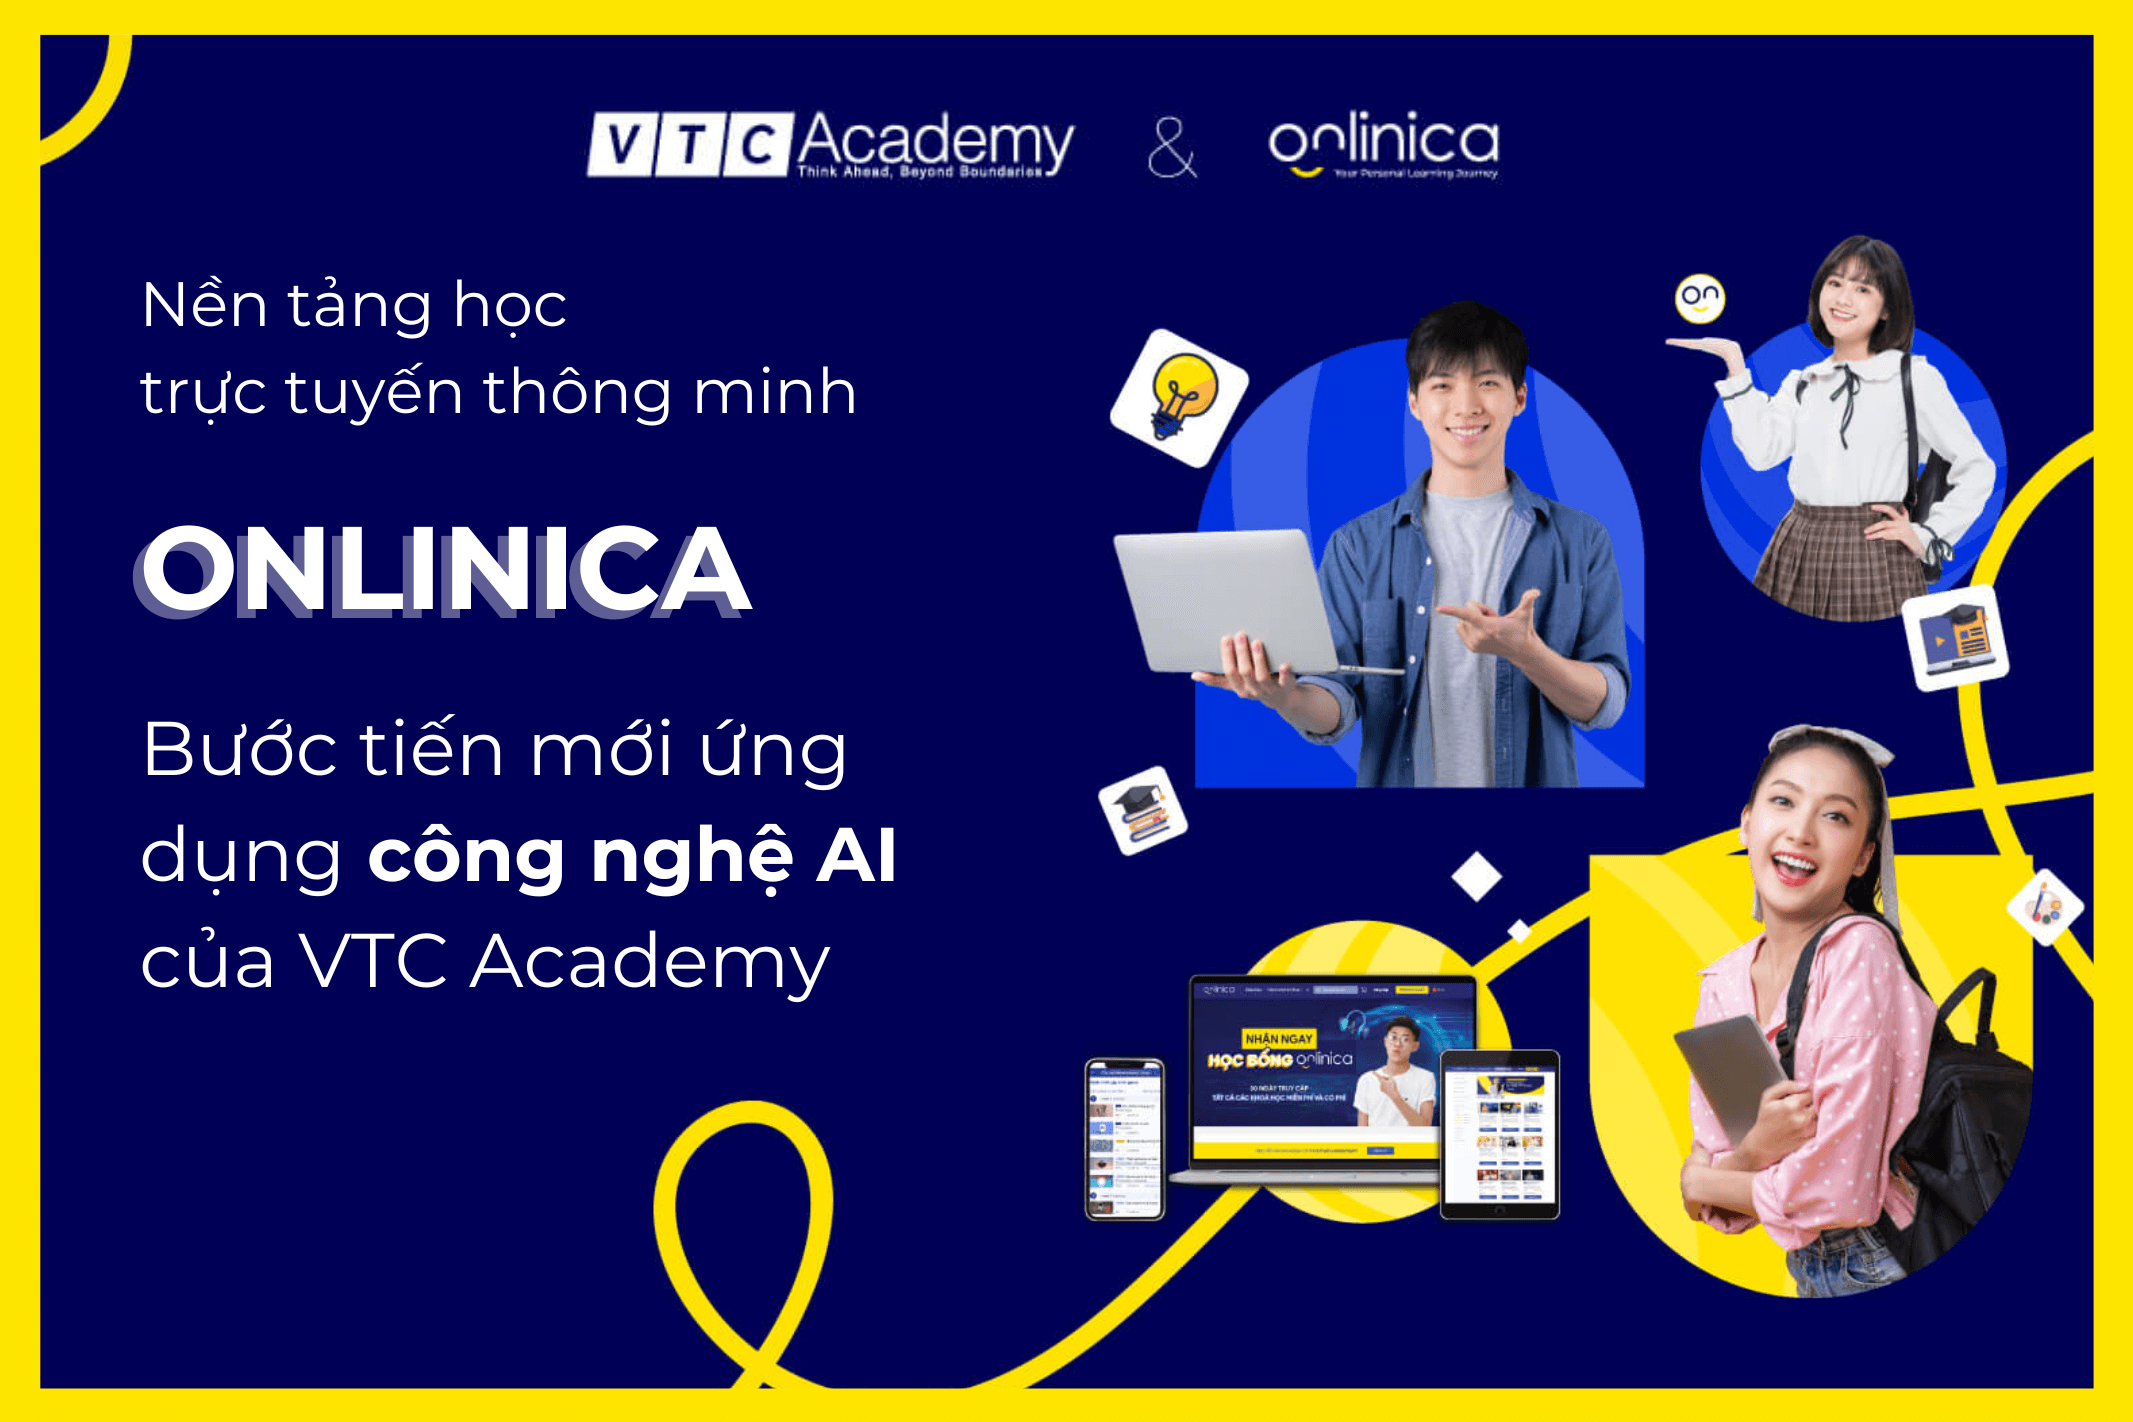 Onlinica – Bước tiến mới trong nỗ lực xây dựng hệ sinh thái ứng dụng công nghệ AI hiện đại của VTC Academy